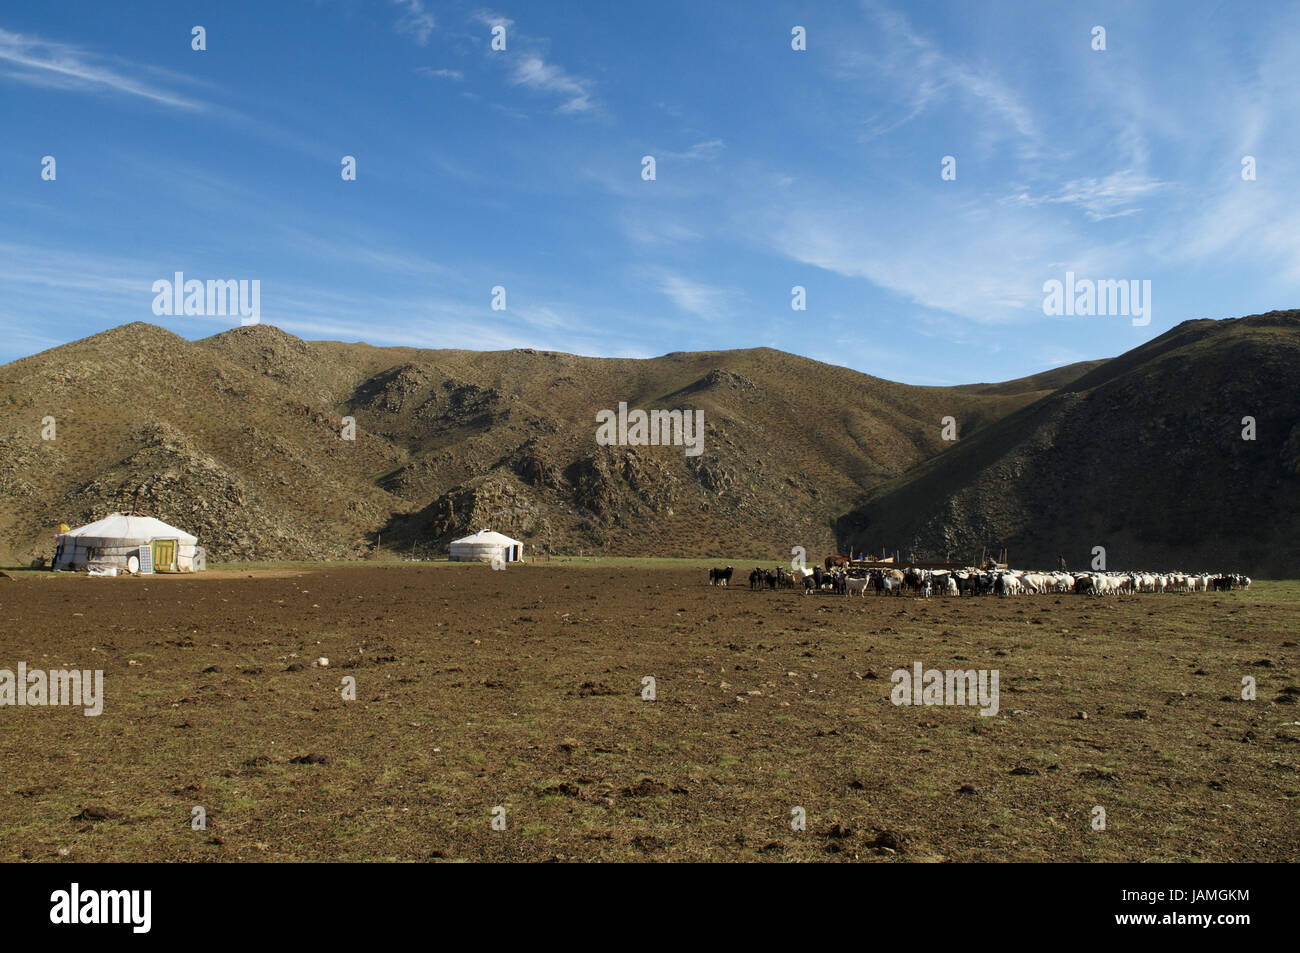 Mongolia,Asia centrale,provincia Arkhangai,supporto nella steppa,Jurten,bovini, Foto Stock